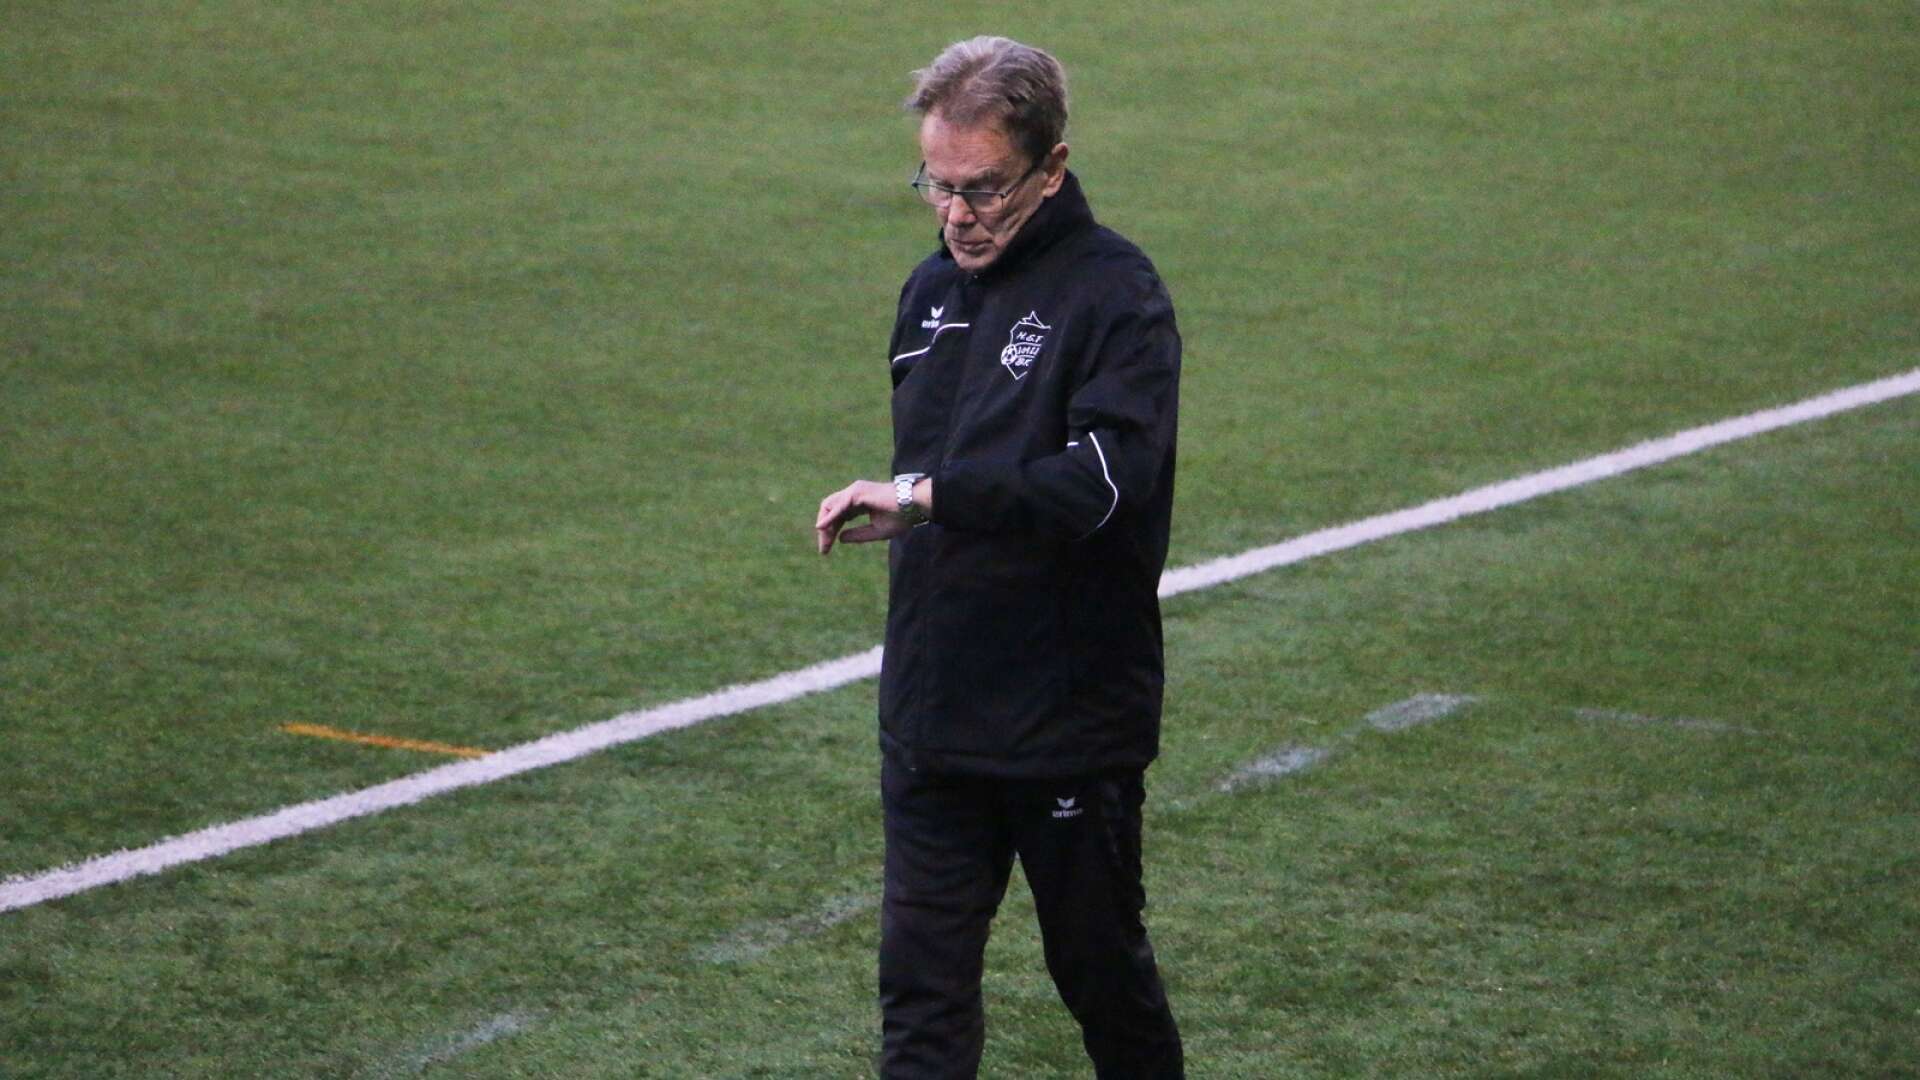 HEF Valbos tränare Lars-Åke Larsson får sparken efter sju säsonger.